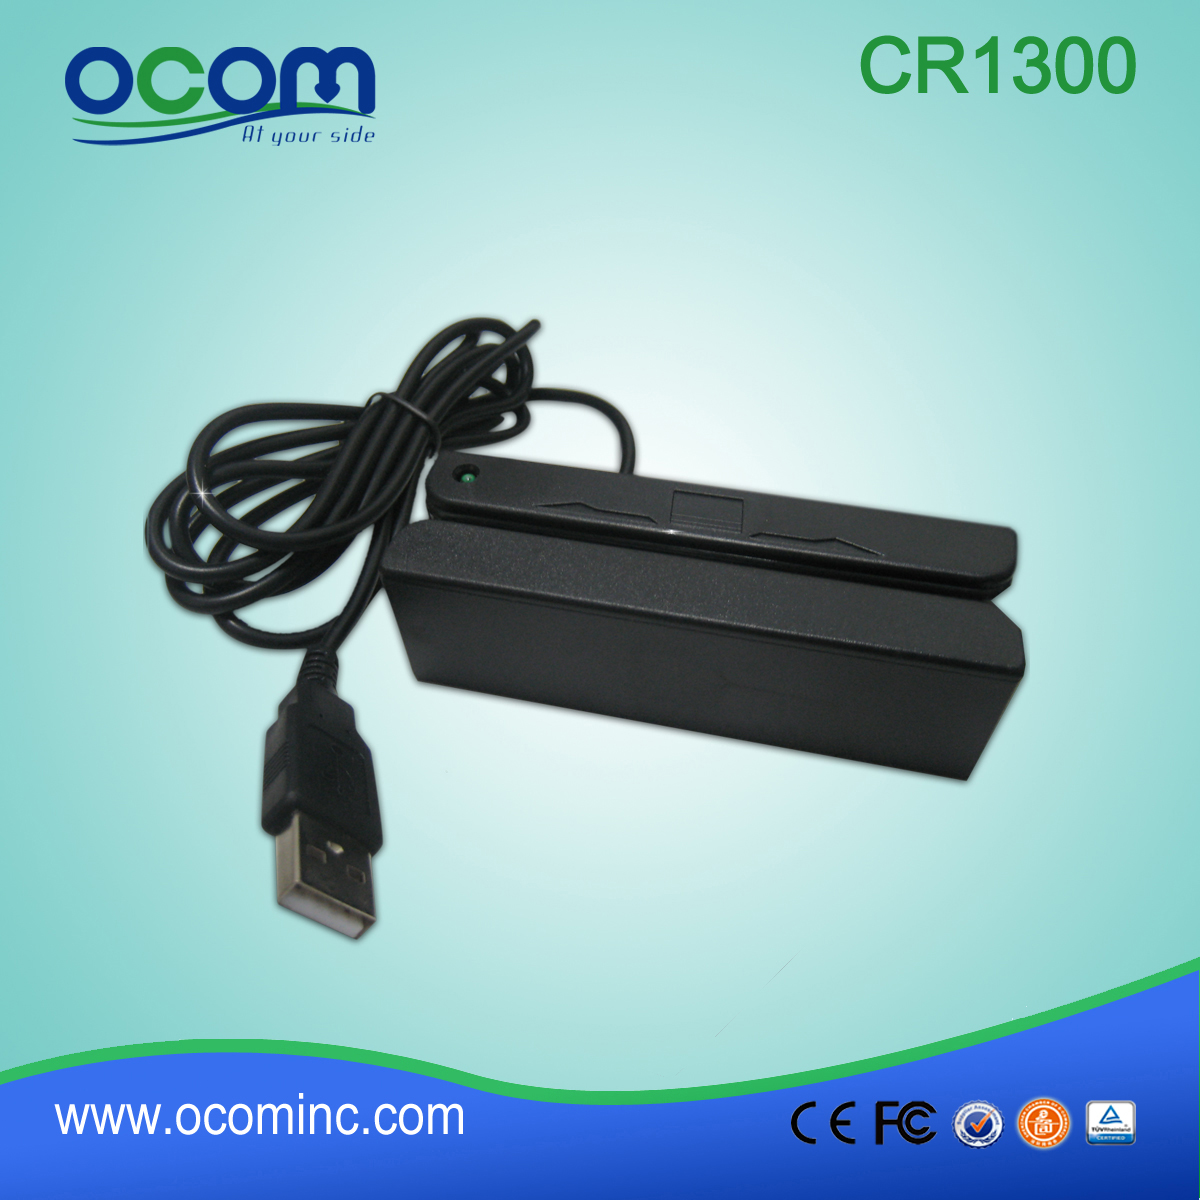 CR1300 أوكوم قارئ بطاقة مغناطيسية لتحديد المواقع تعقب